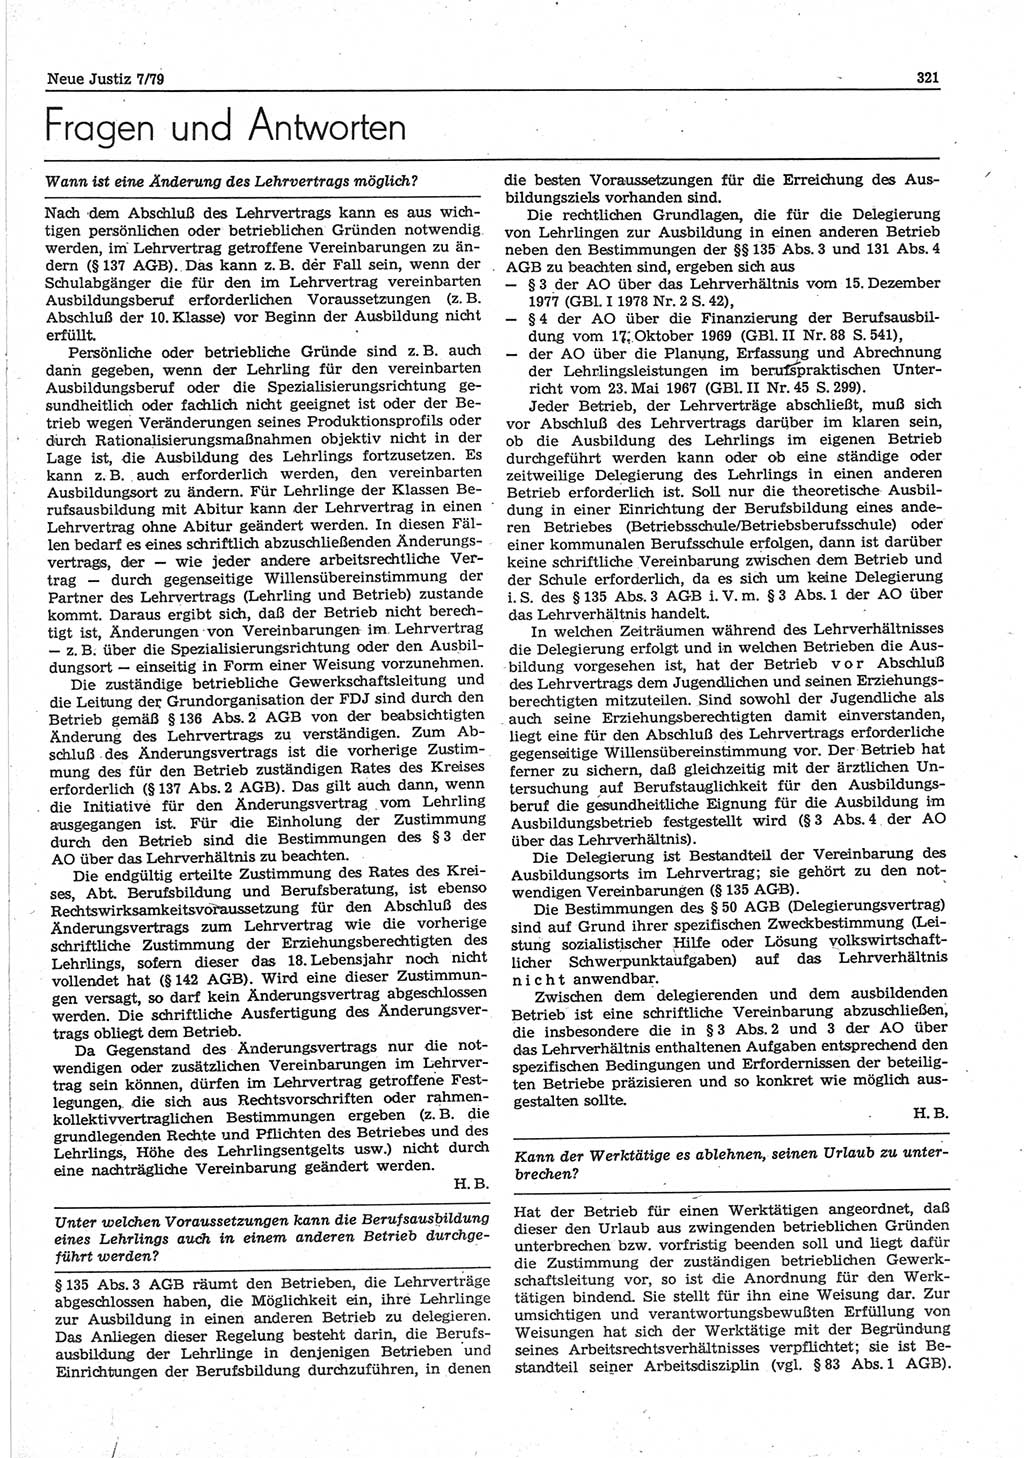 Neue Justiz (NJ), Zeitschrift für sozialistisches Recht und Gesetzlichkeit [Deutsche Demokratische Republik (DDR)], 33. Jahrgang 1979, Seite 321 (NJ DDR 1979, S. 321)